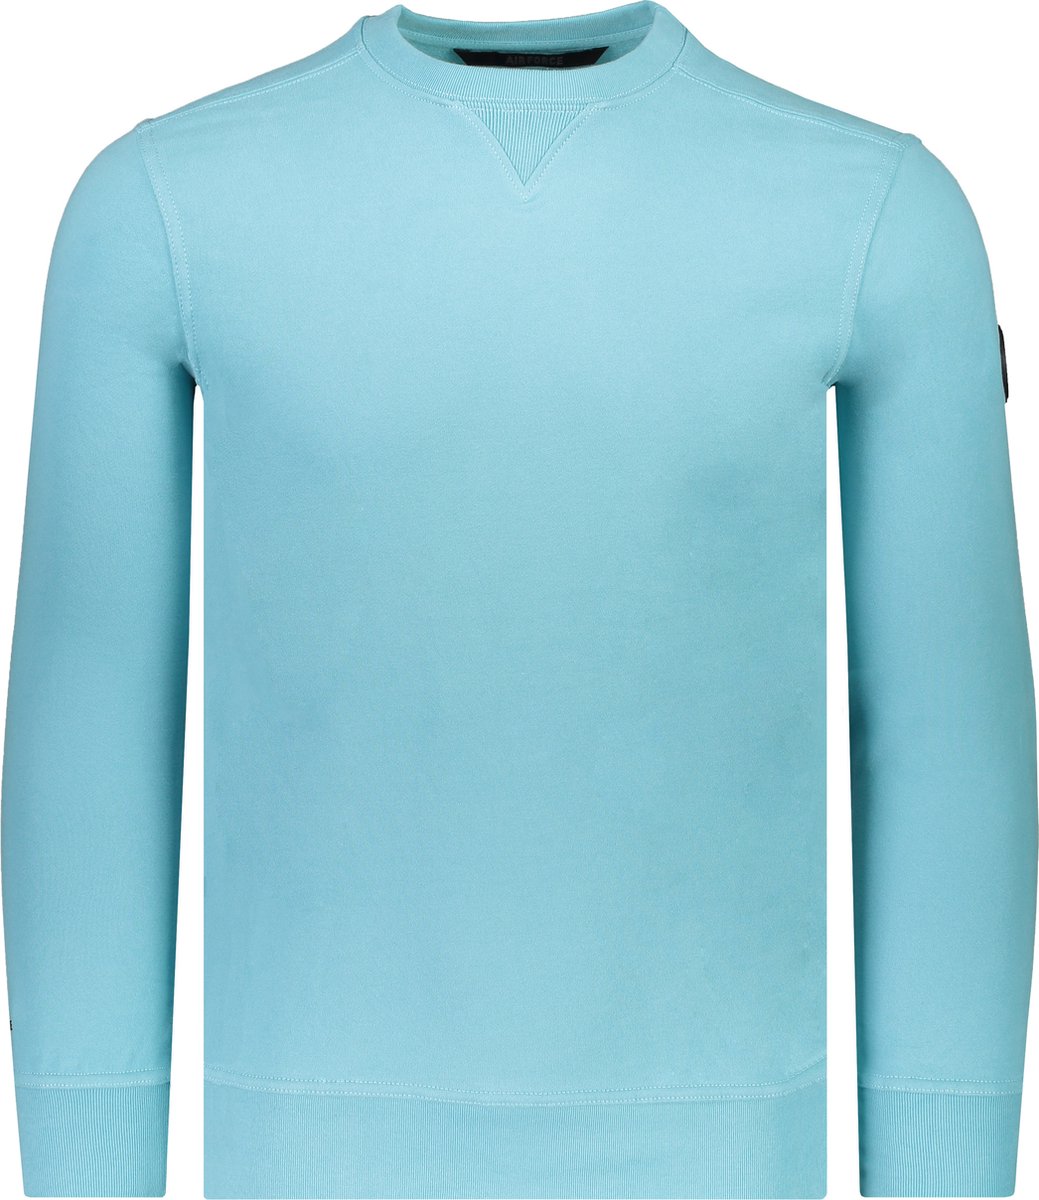 Airforce Sweater Blauw Normaal - Maat XL - Mannen - Lente/Zomer Collectie - Katoen